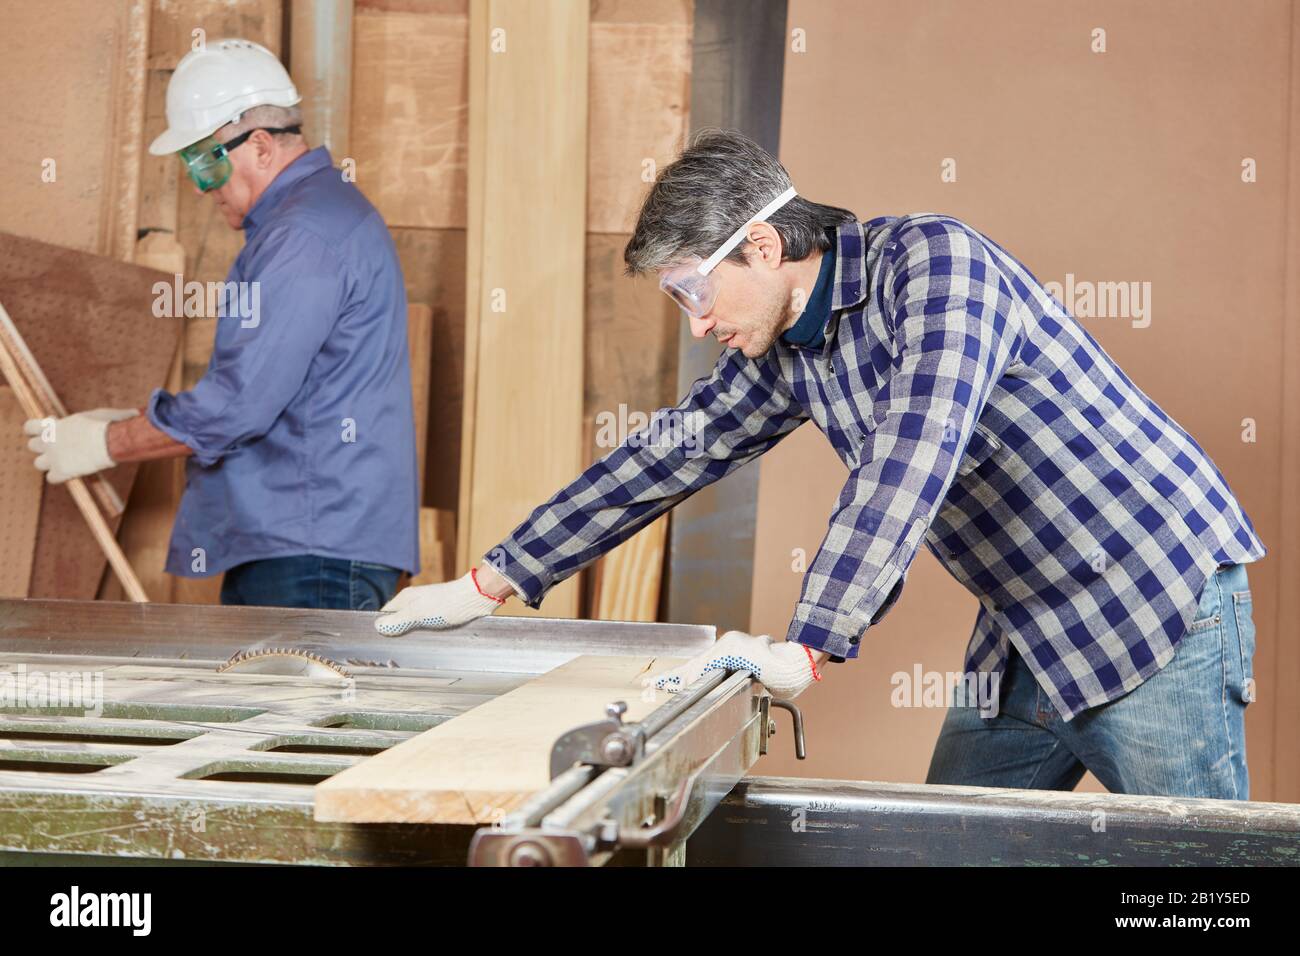 Carpenter corta madera con una sierra circular en una carpintería Foto de stock